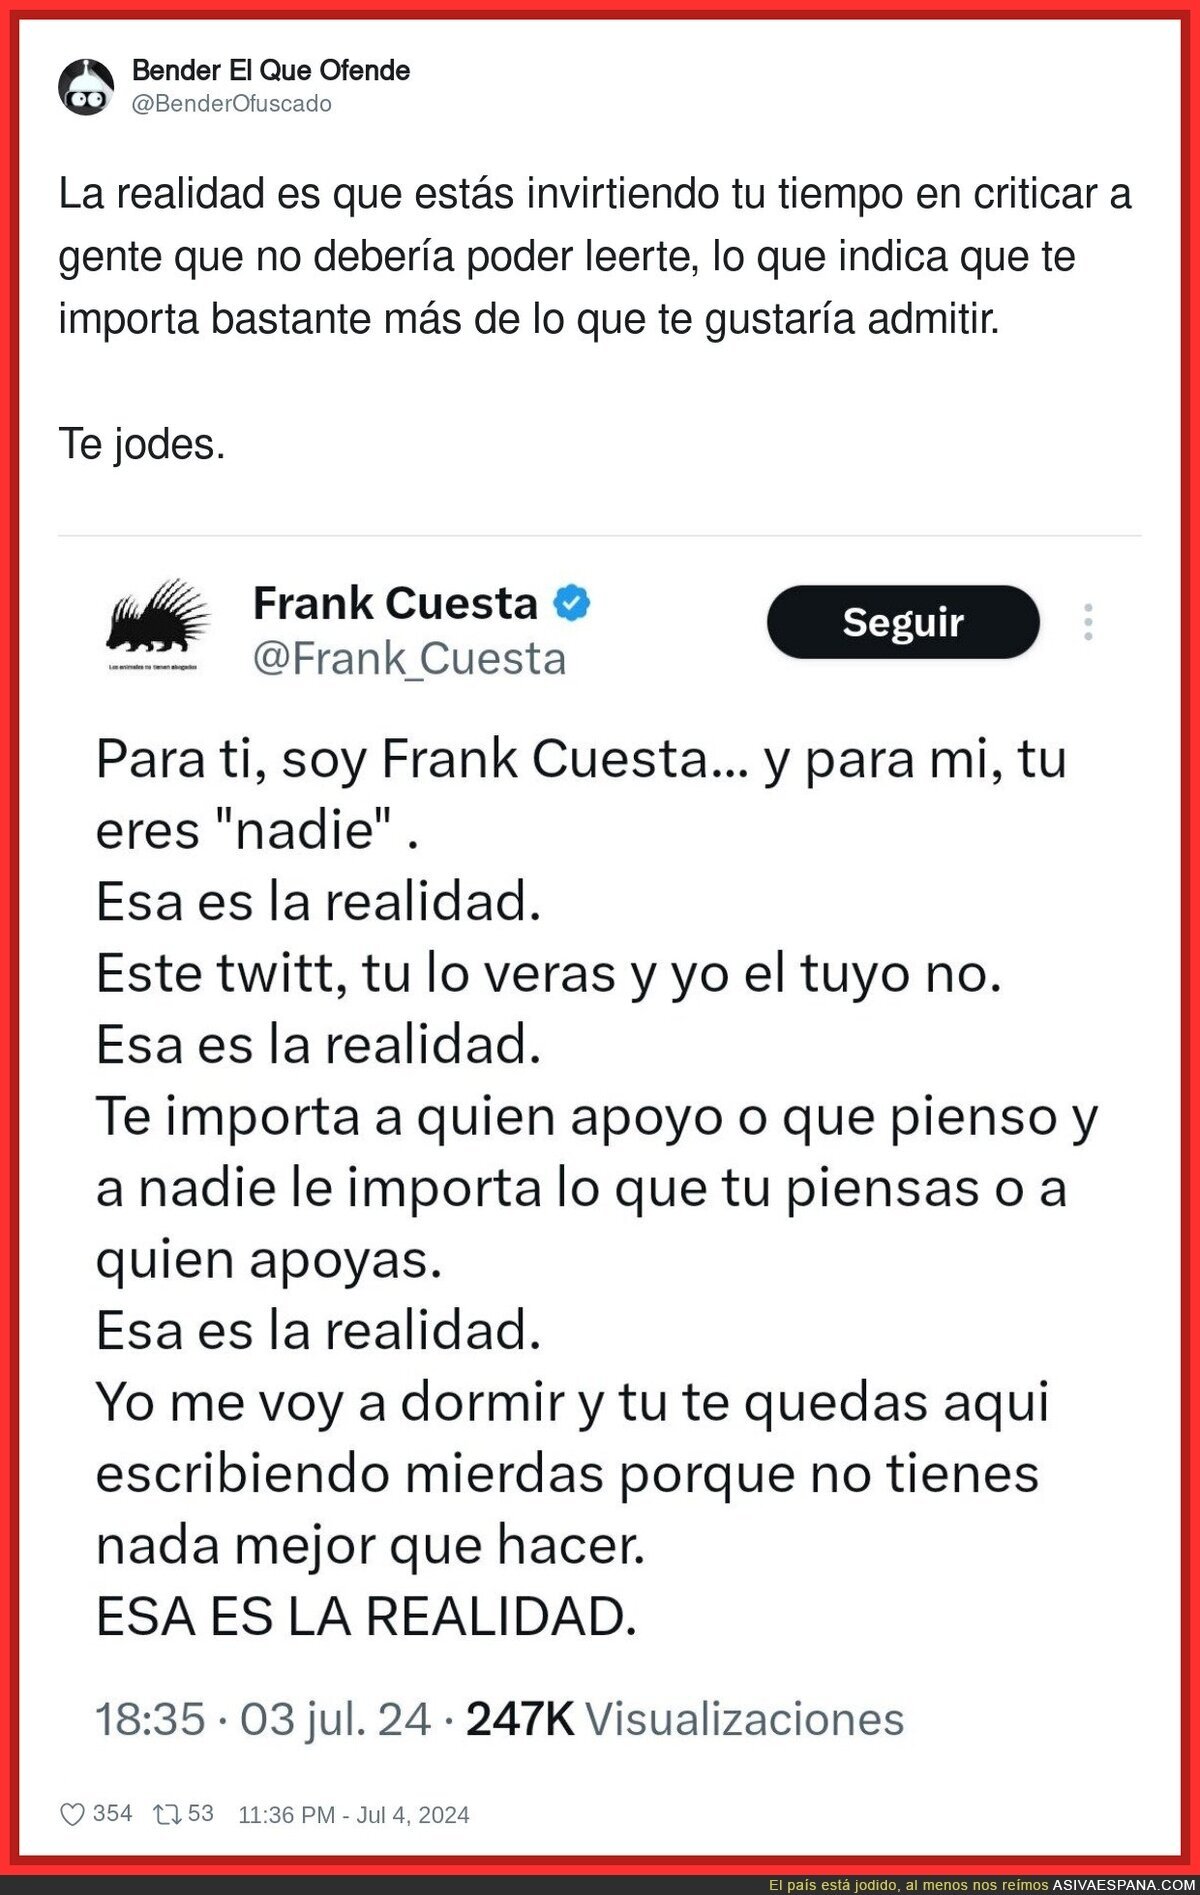 La realidad de Frank Cuesta